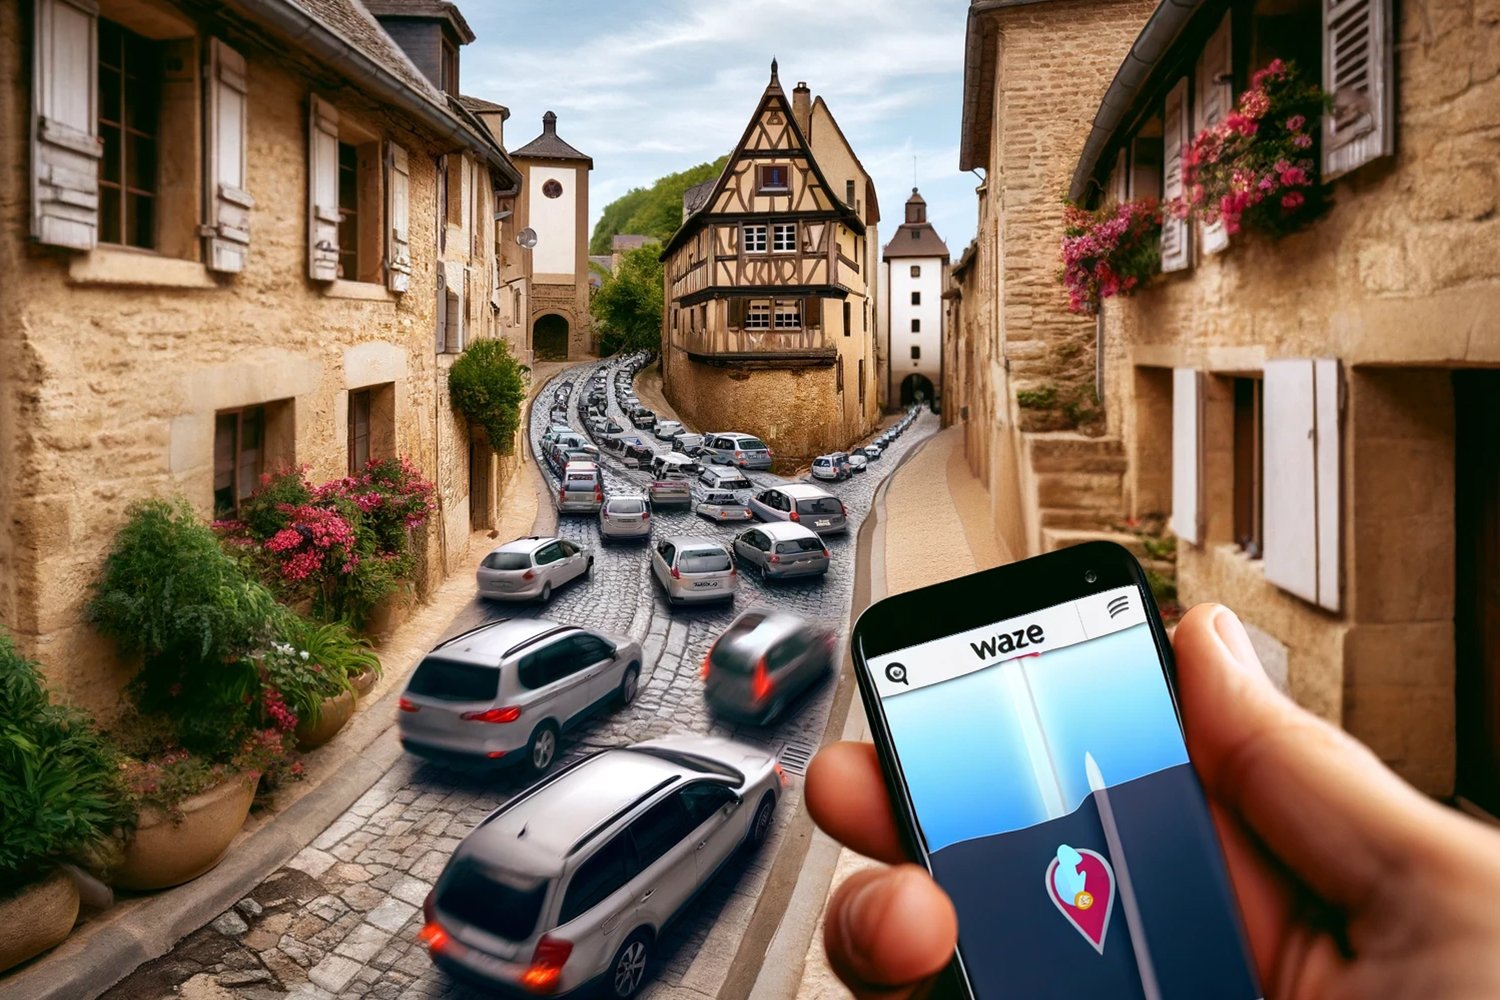 L’effet Waze : l’application GPS sème le chaos dans des petits villages français